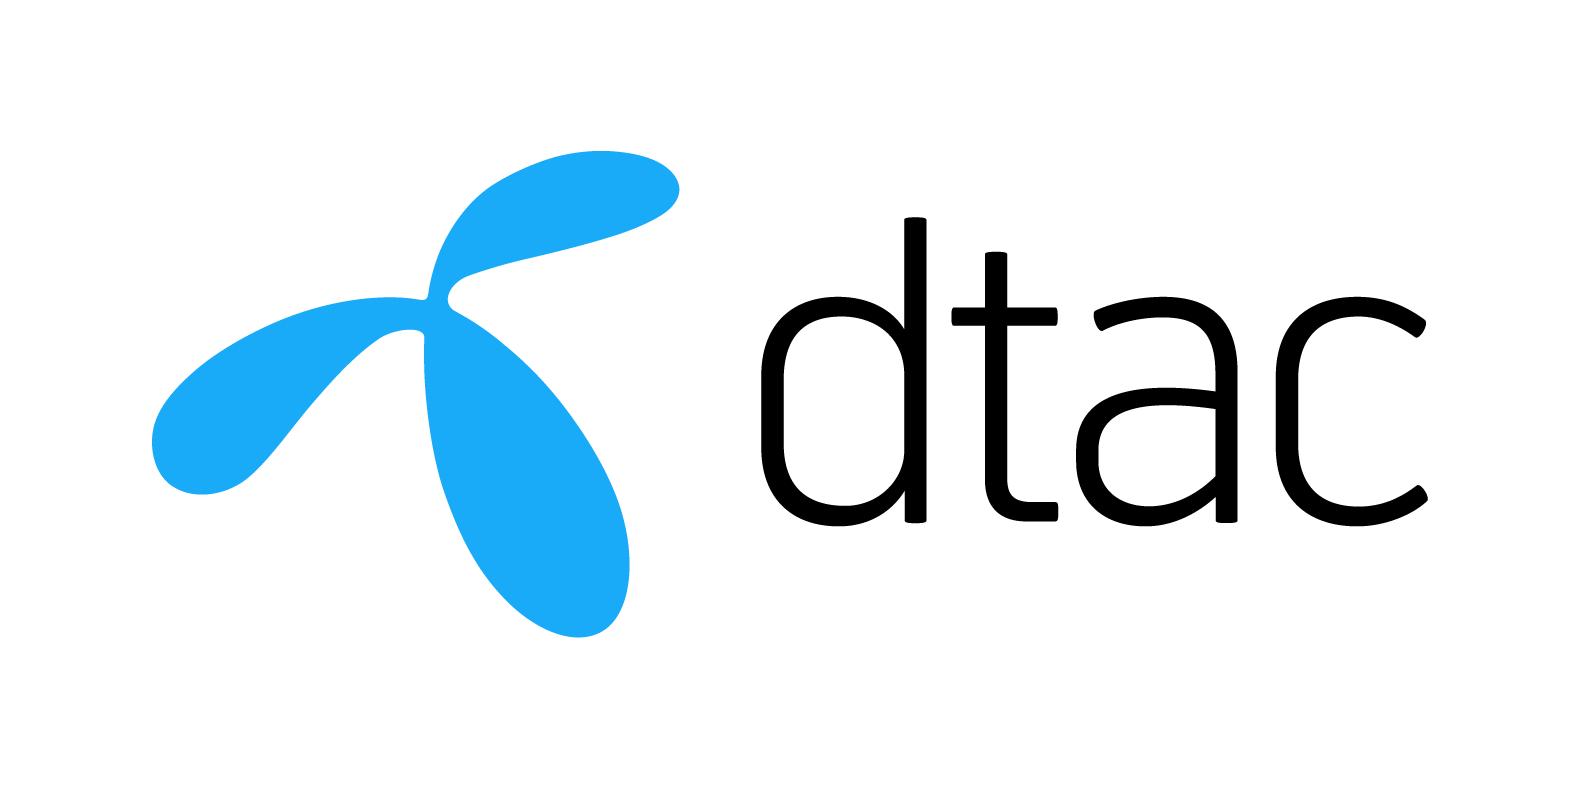 Dtac ปิดศูนย์บริการหลายแห่งที่อยู่ในห้างสรรพสินค้าในกรุงเทพฯ  แนะนำลูกค้าใช้บริการช่องทางดิจิทัล – ดีแทคแอป